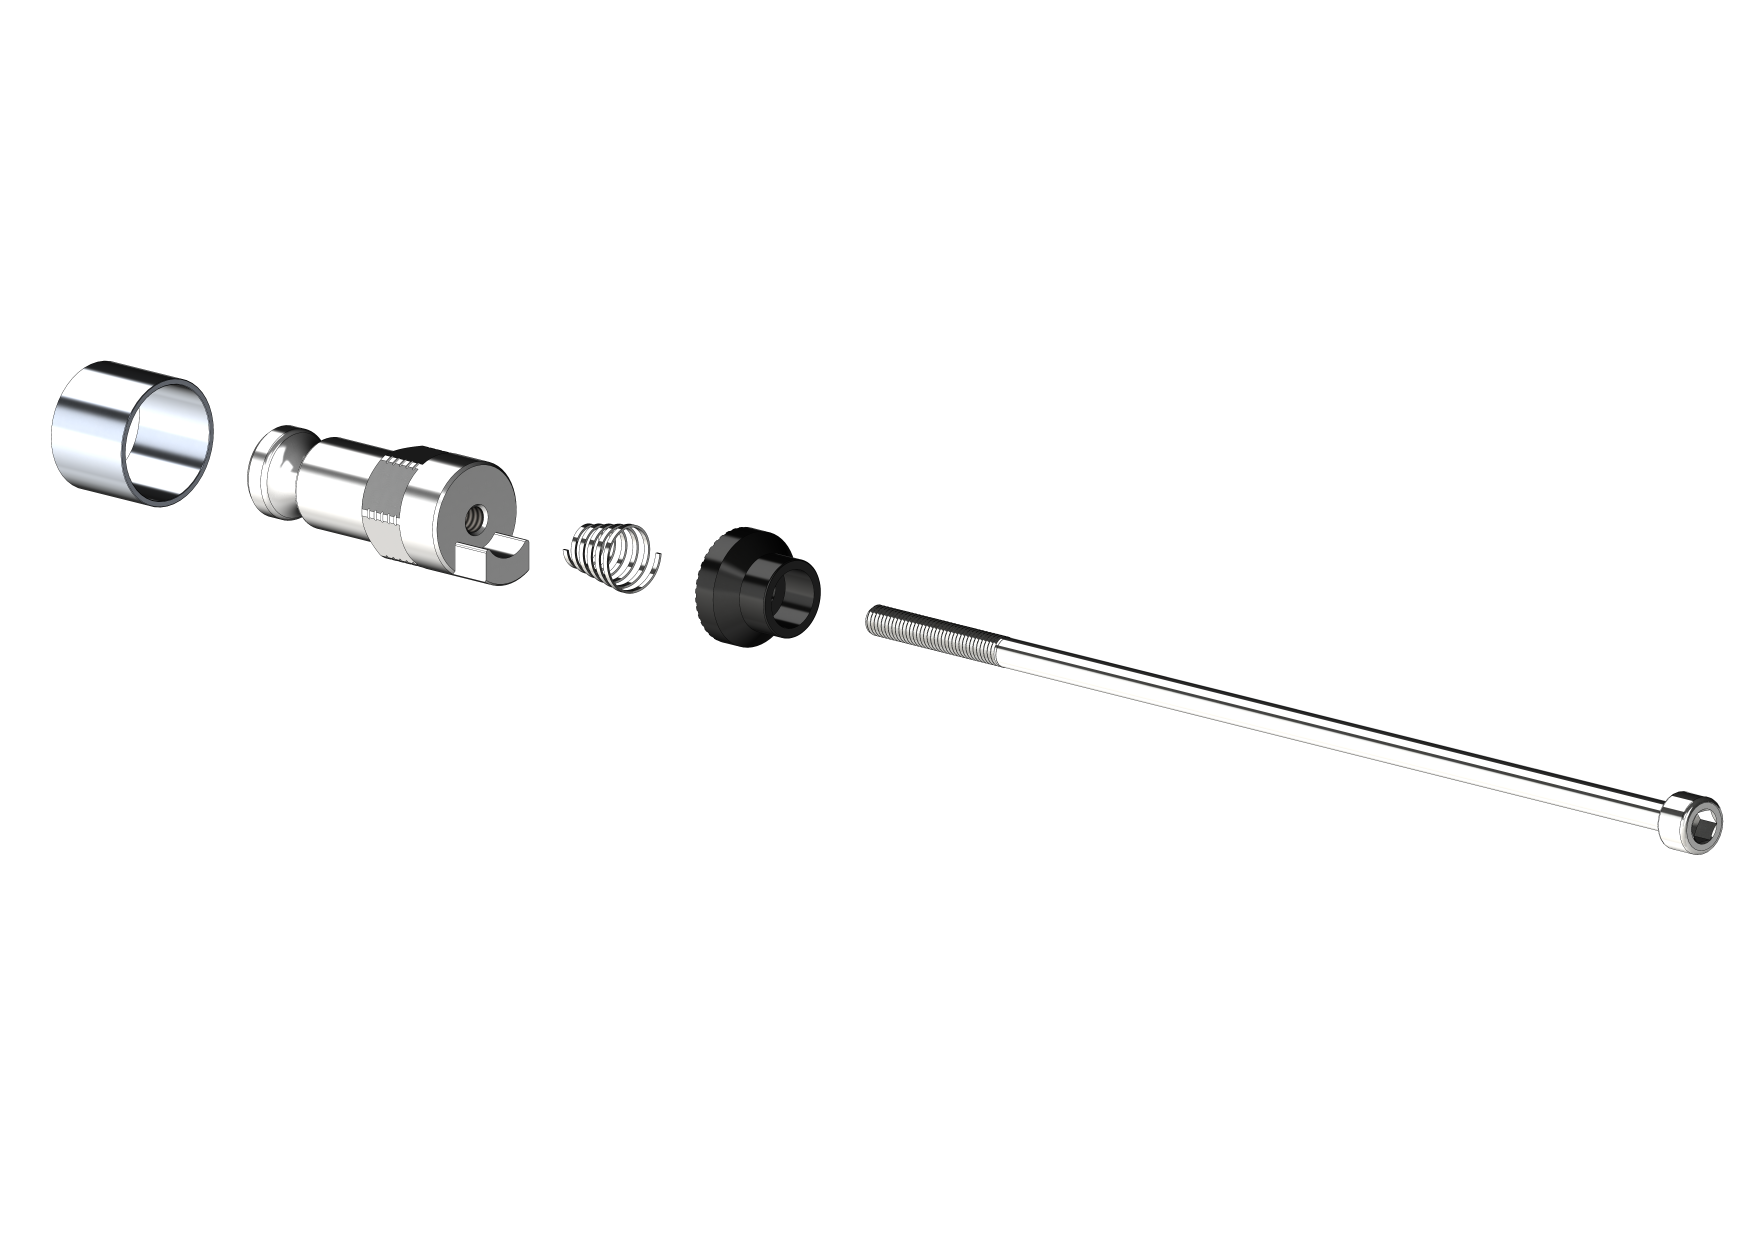 Schnellspannachse mit Adapter (für Croozer Anhänger ab 2018 ) - Klemmlänge 154mm - 165mm